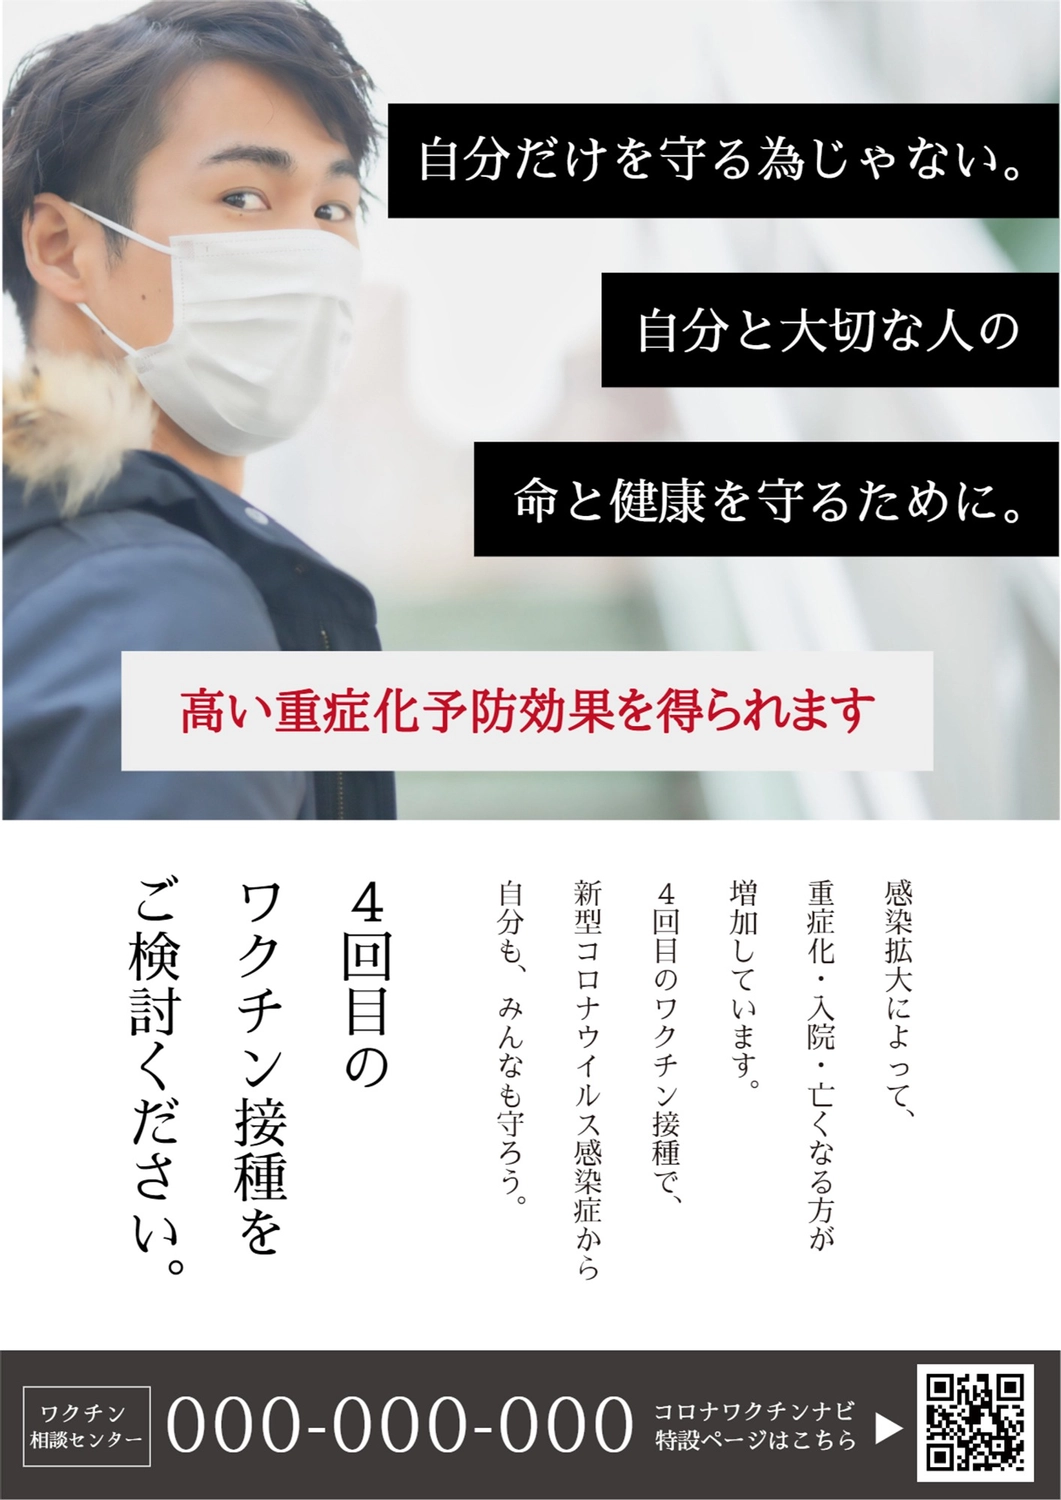 男性の写真を使った4回目ワクチン接種を推奨するポスター

, mask, corona, vaccination, Poster template